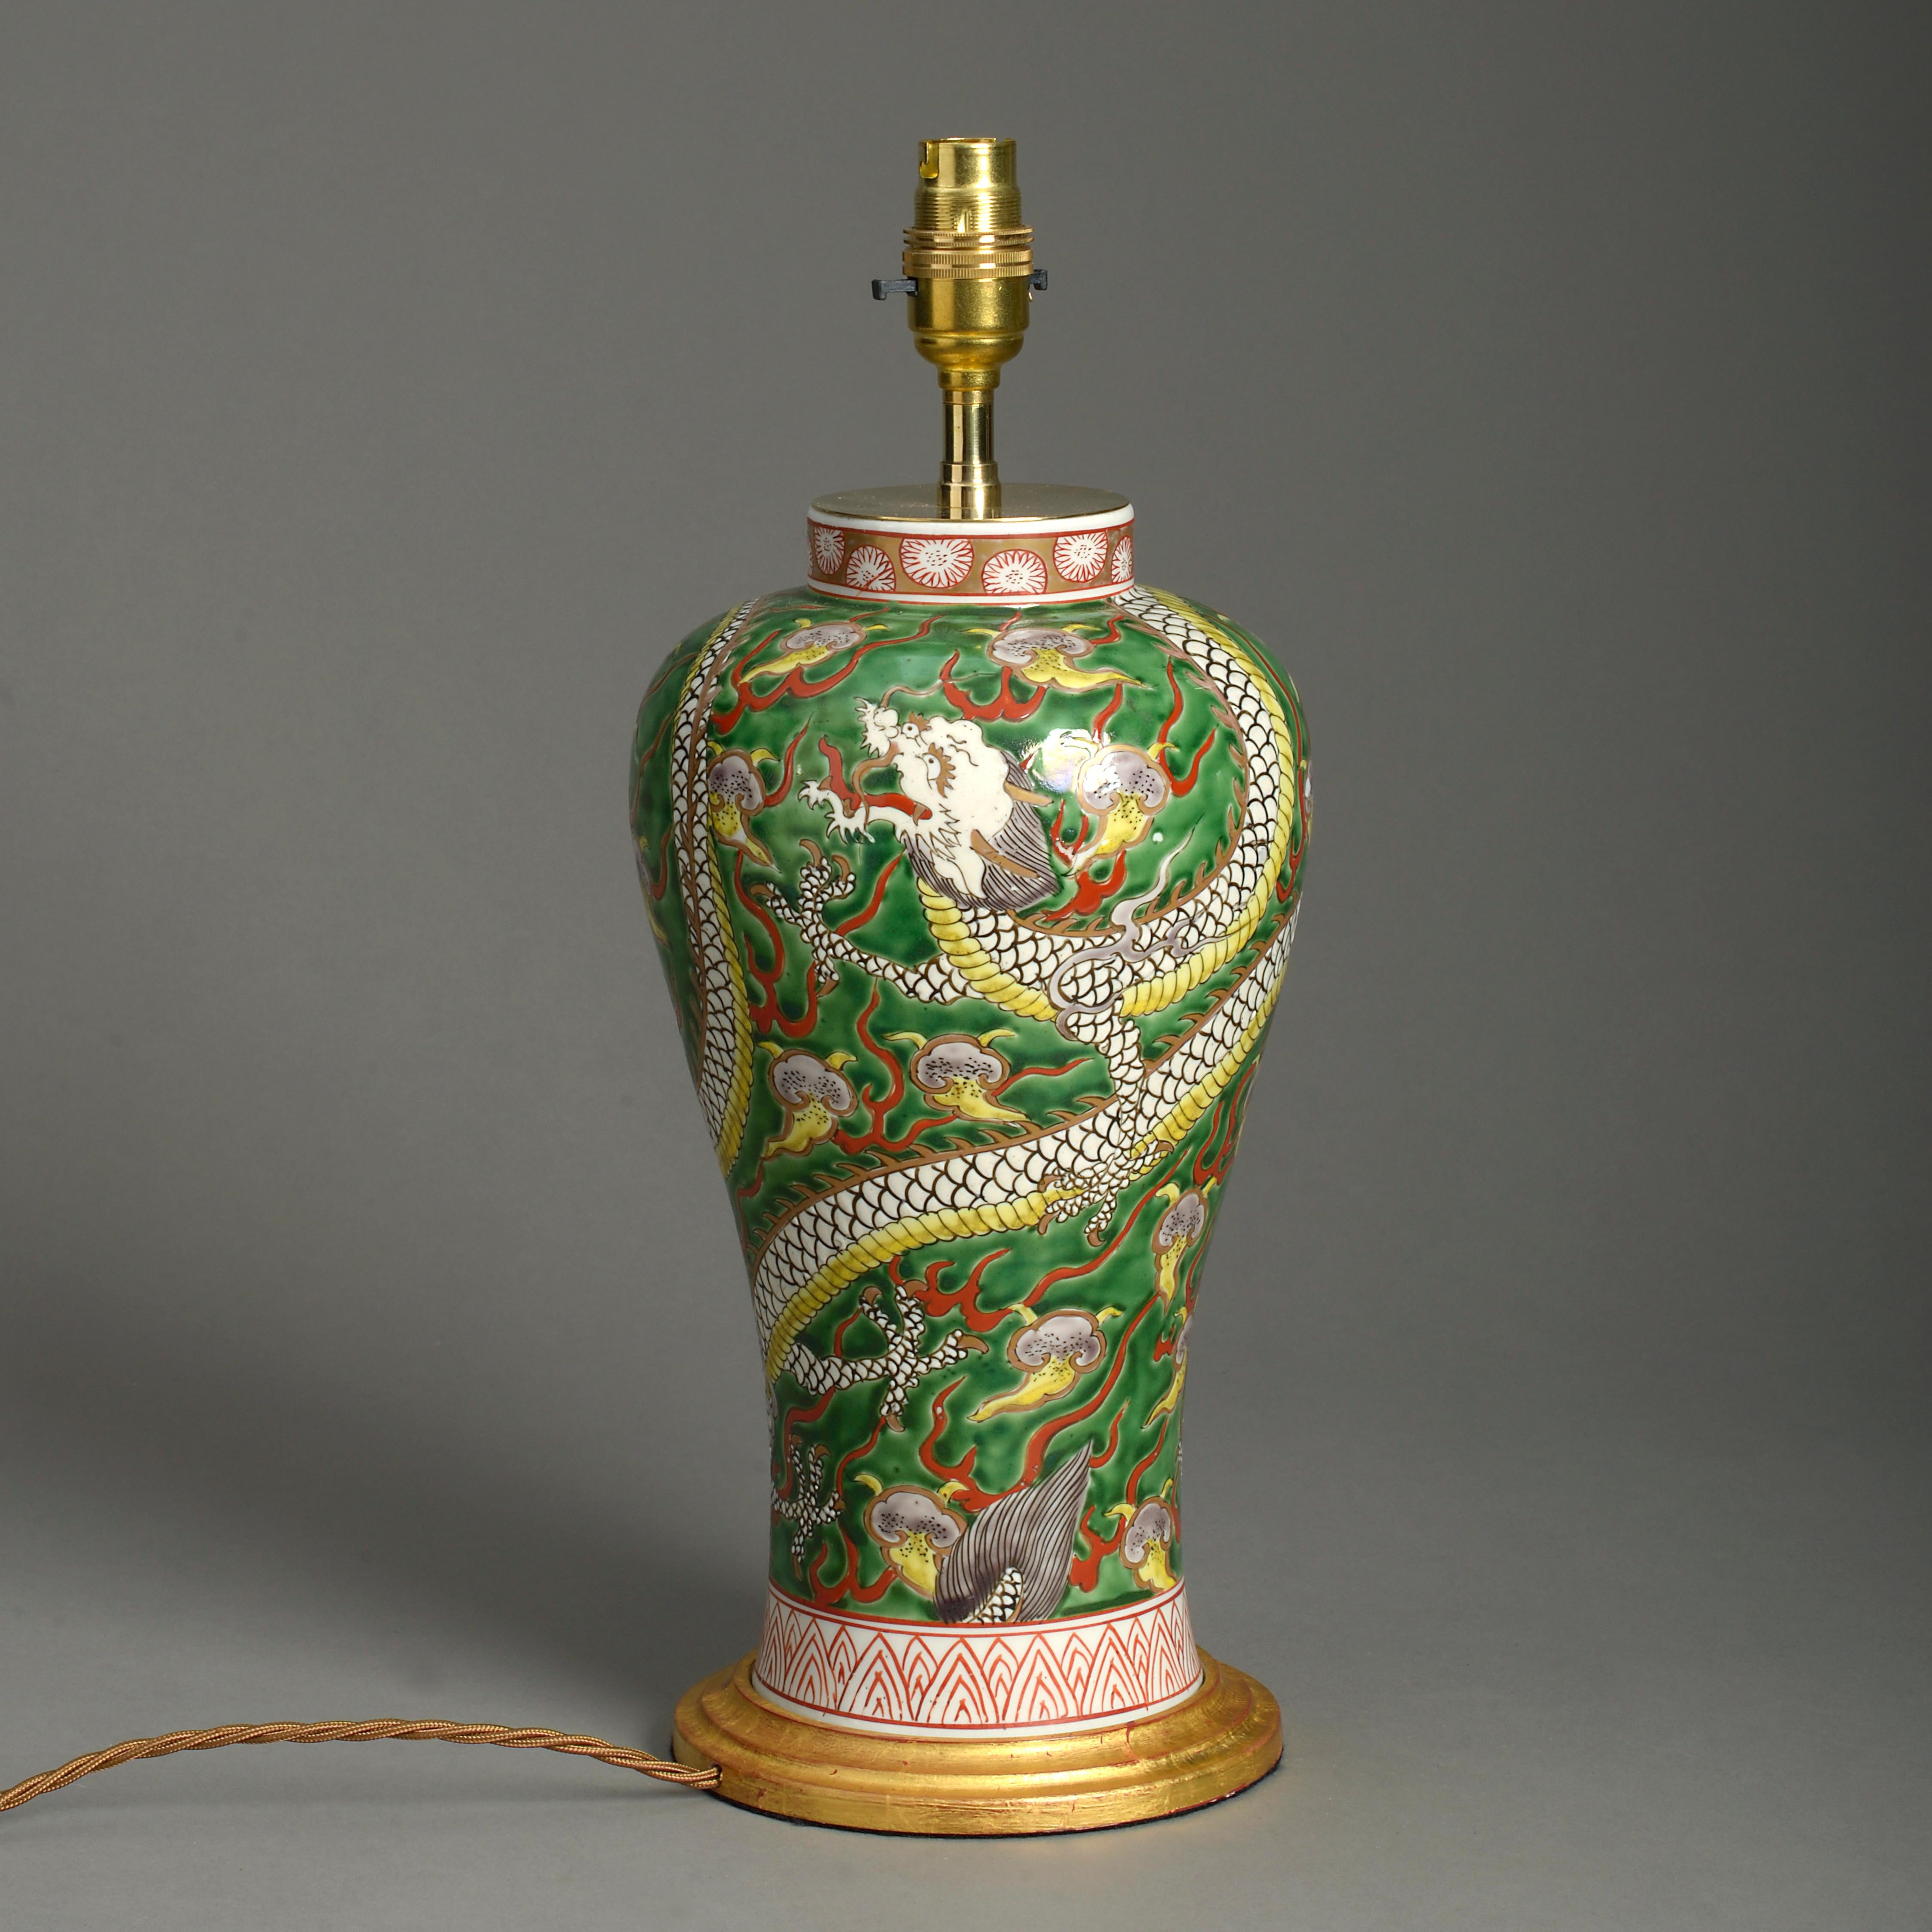 Eine balusterförmige Vase aus dem späten 19. Jahrhundert, deren Korpus mit einem polychromen Drachen auf grün glasiertem Grund verziert ist. Jetzt als Lampe montiert und auf einen gedrechselten Sockel aus Goldholz gestellt.

Die Abmessungen